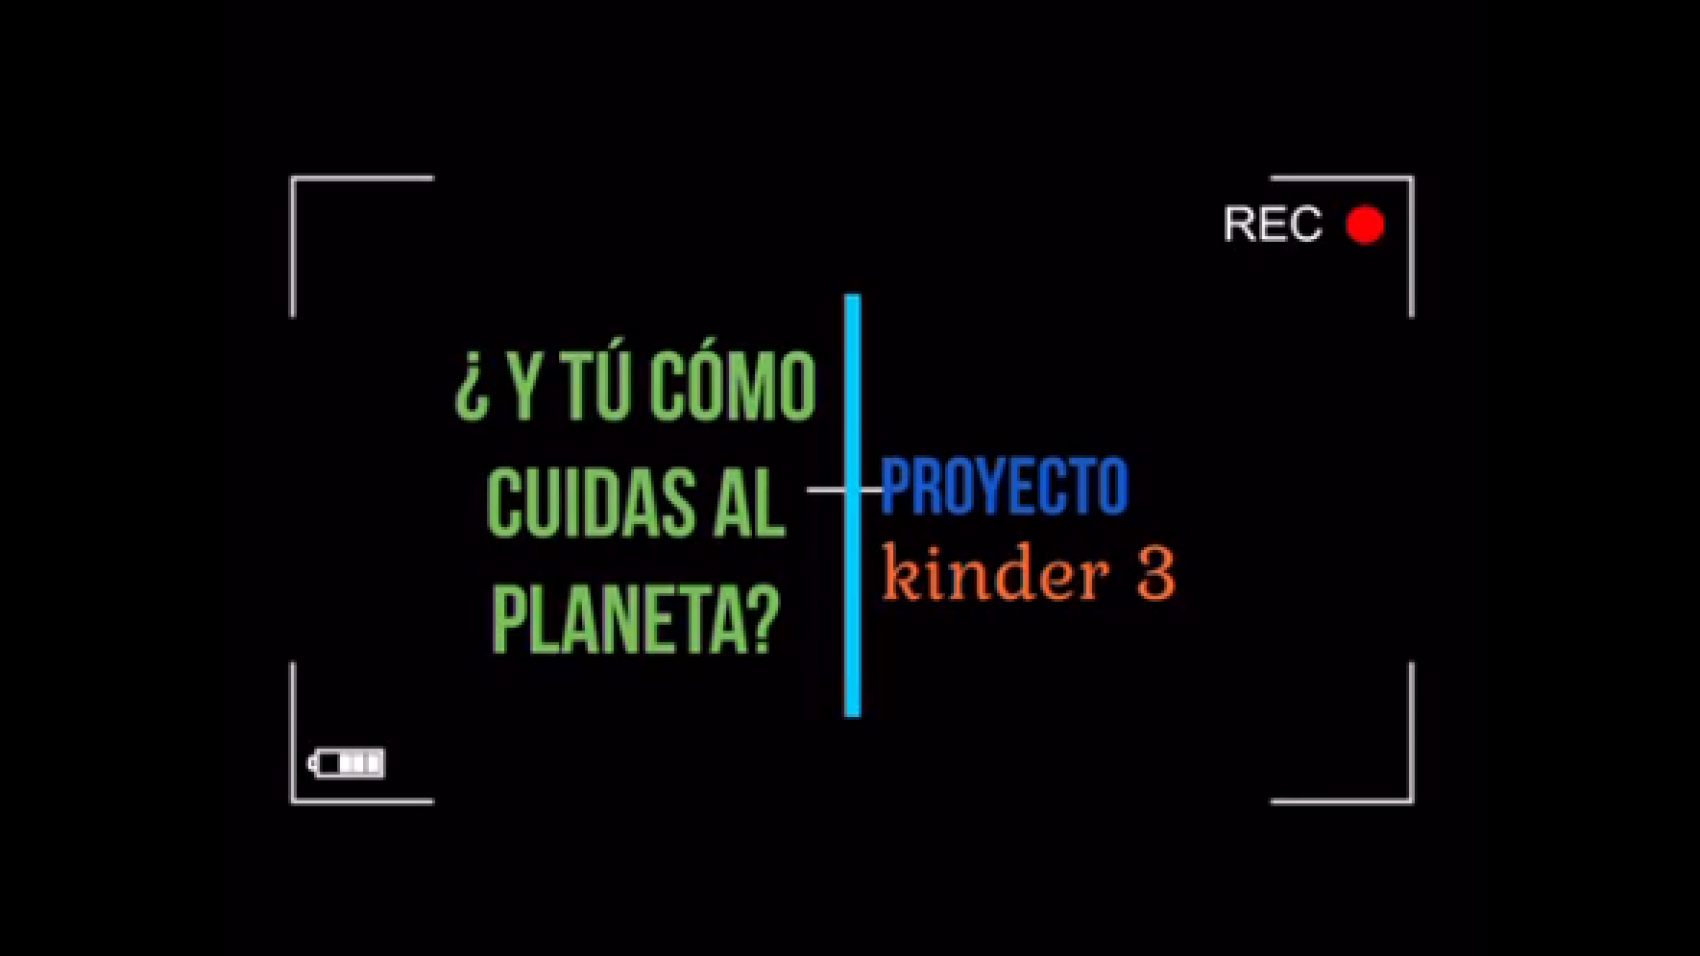 Proyecto Kinder 3 Cuidado del Planeta